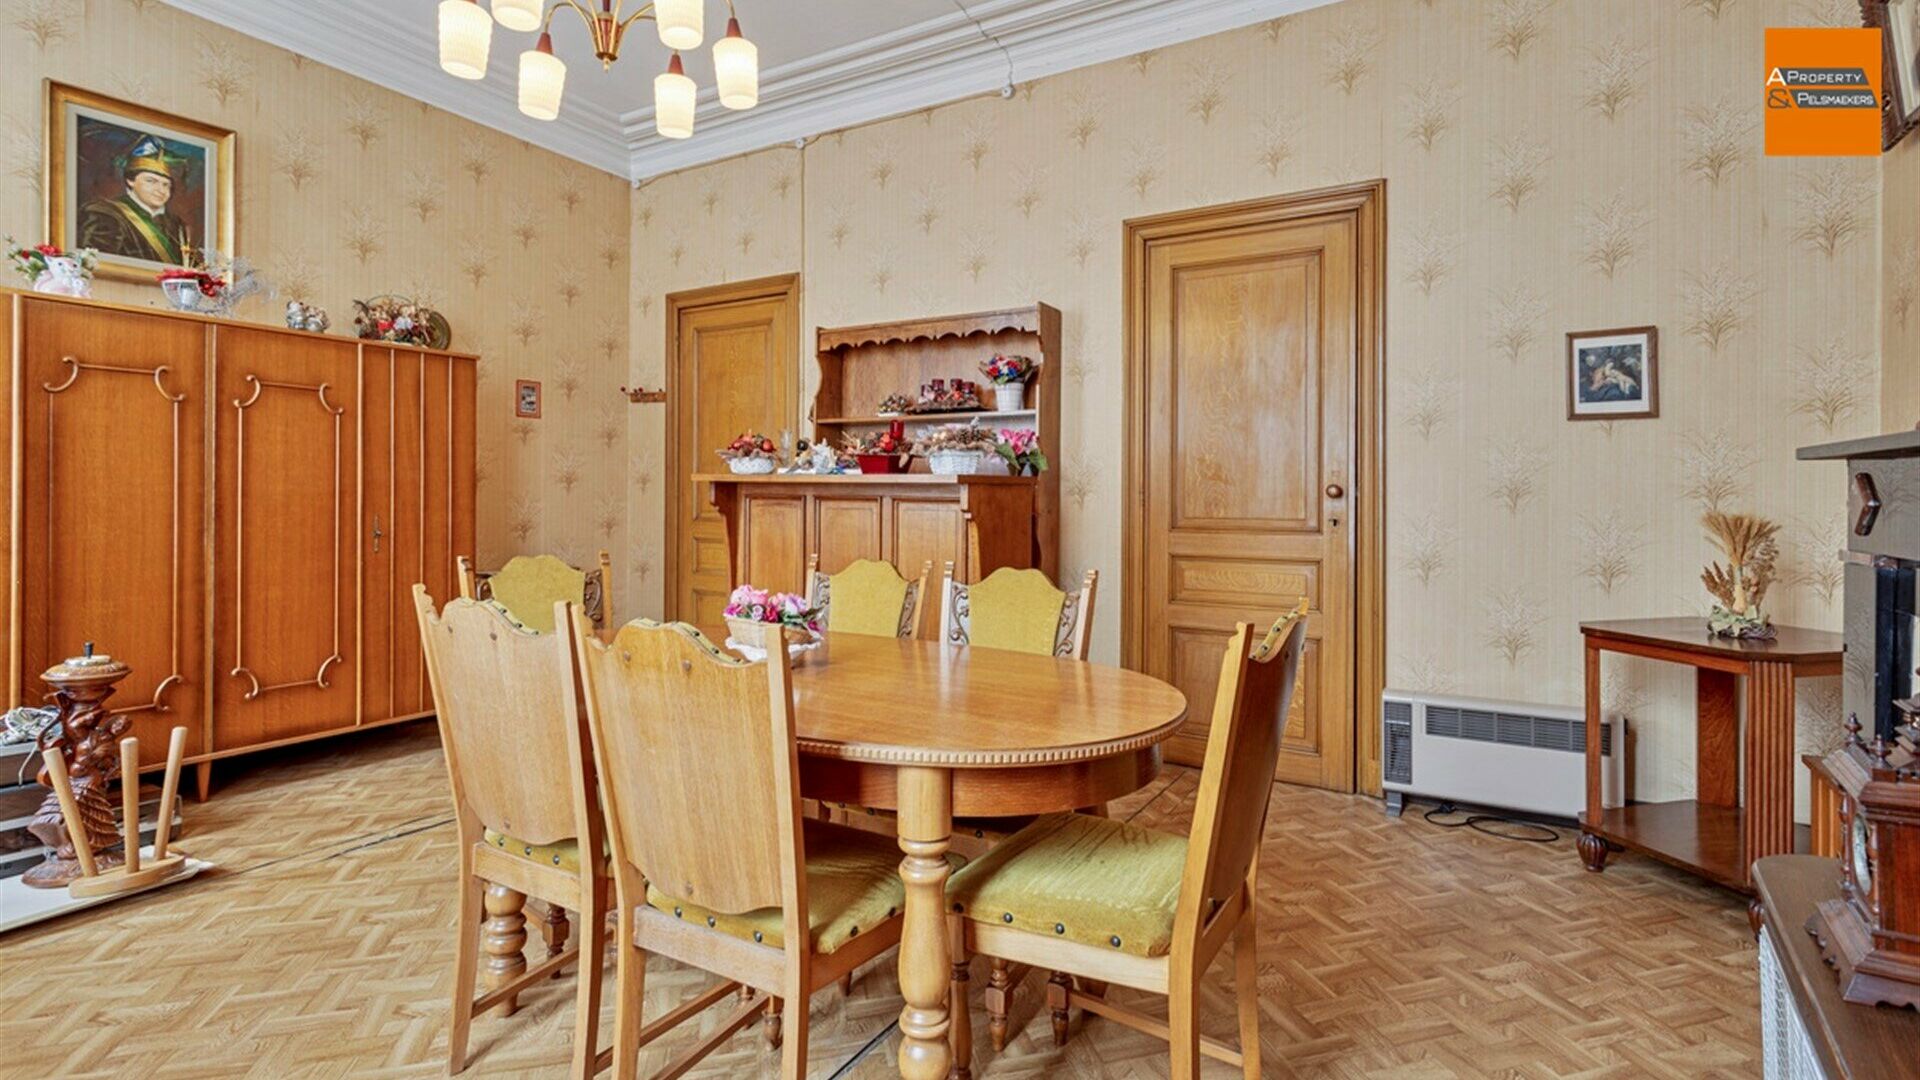 Mansion for sale in KORTENBERG